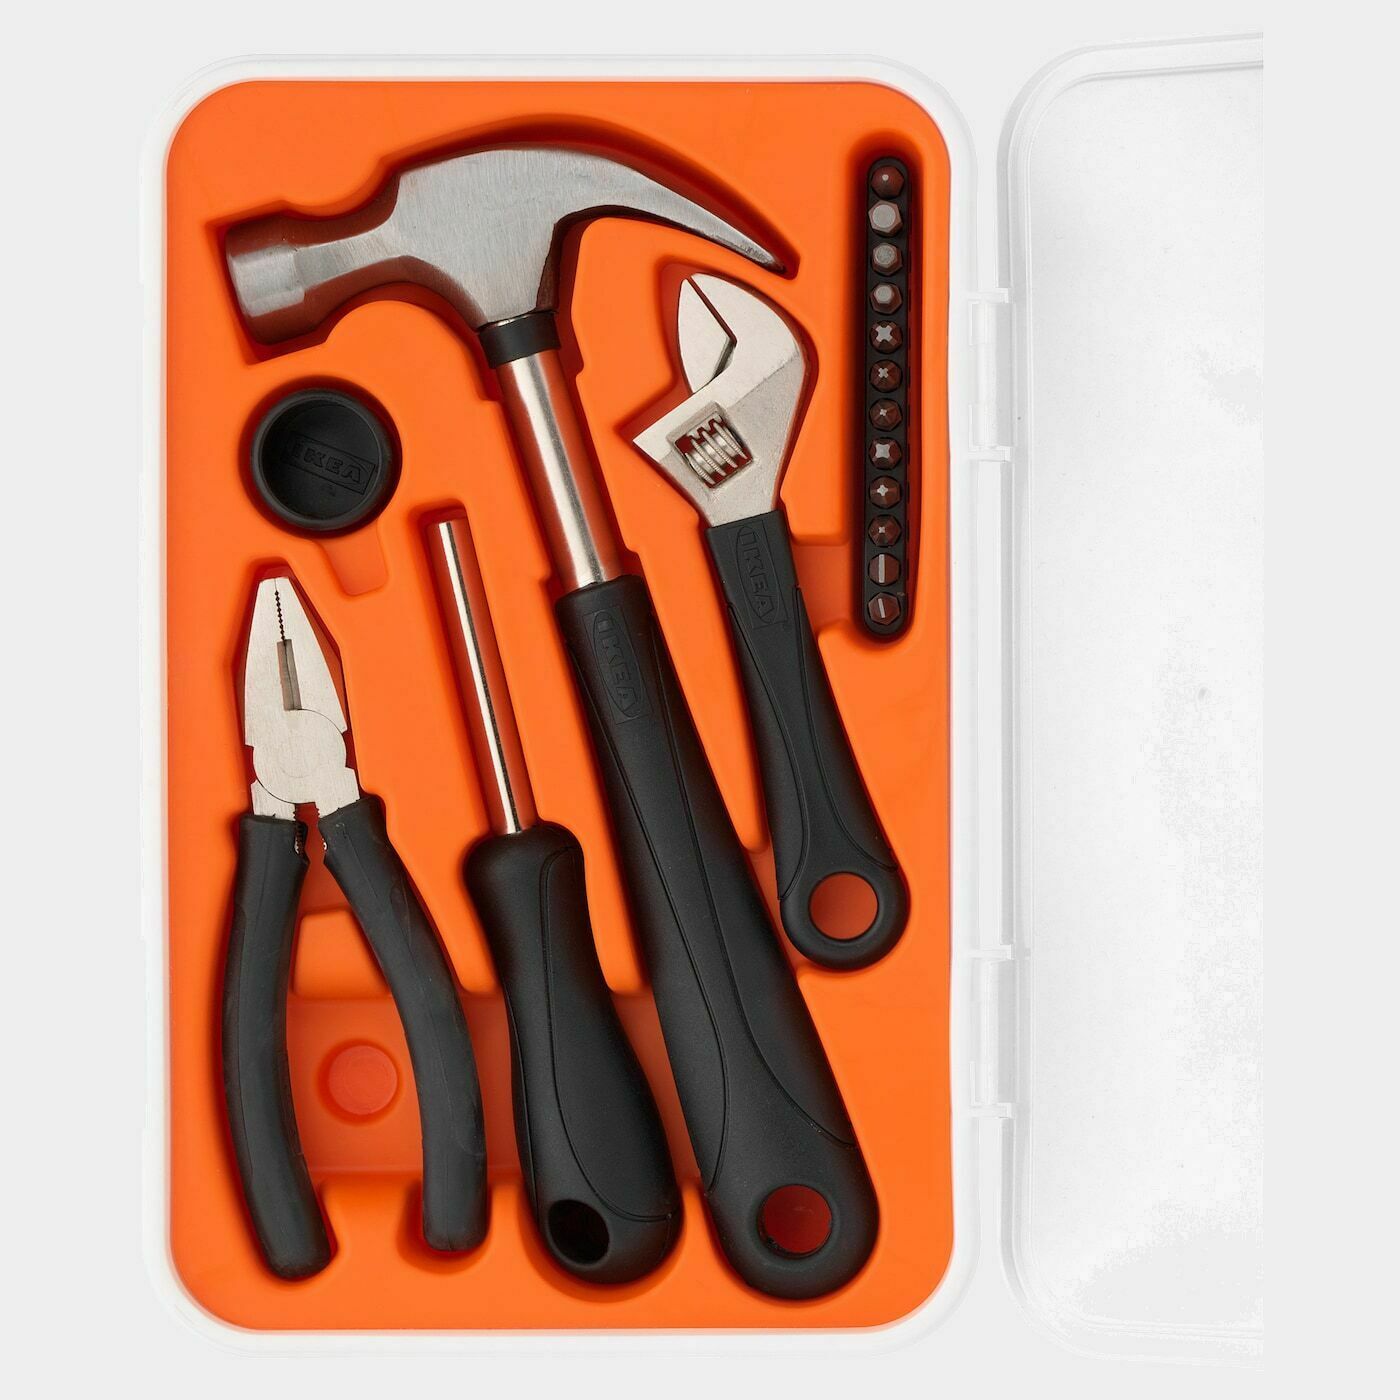 FIXA Werkzeugsatz 17-tlg.  - Werkzeug - Heimwerken Ideen für dein Zuhause von Home Trends. Heimwerken Trends von Social Media Influencer für dein Skandi Zuhause.